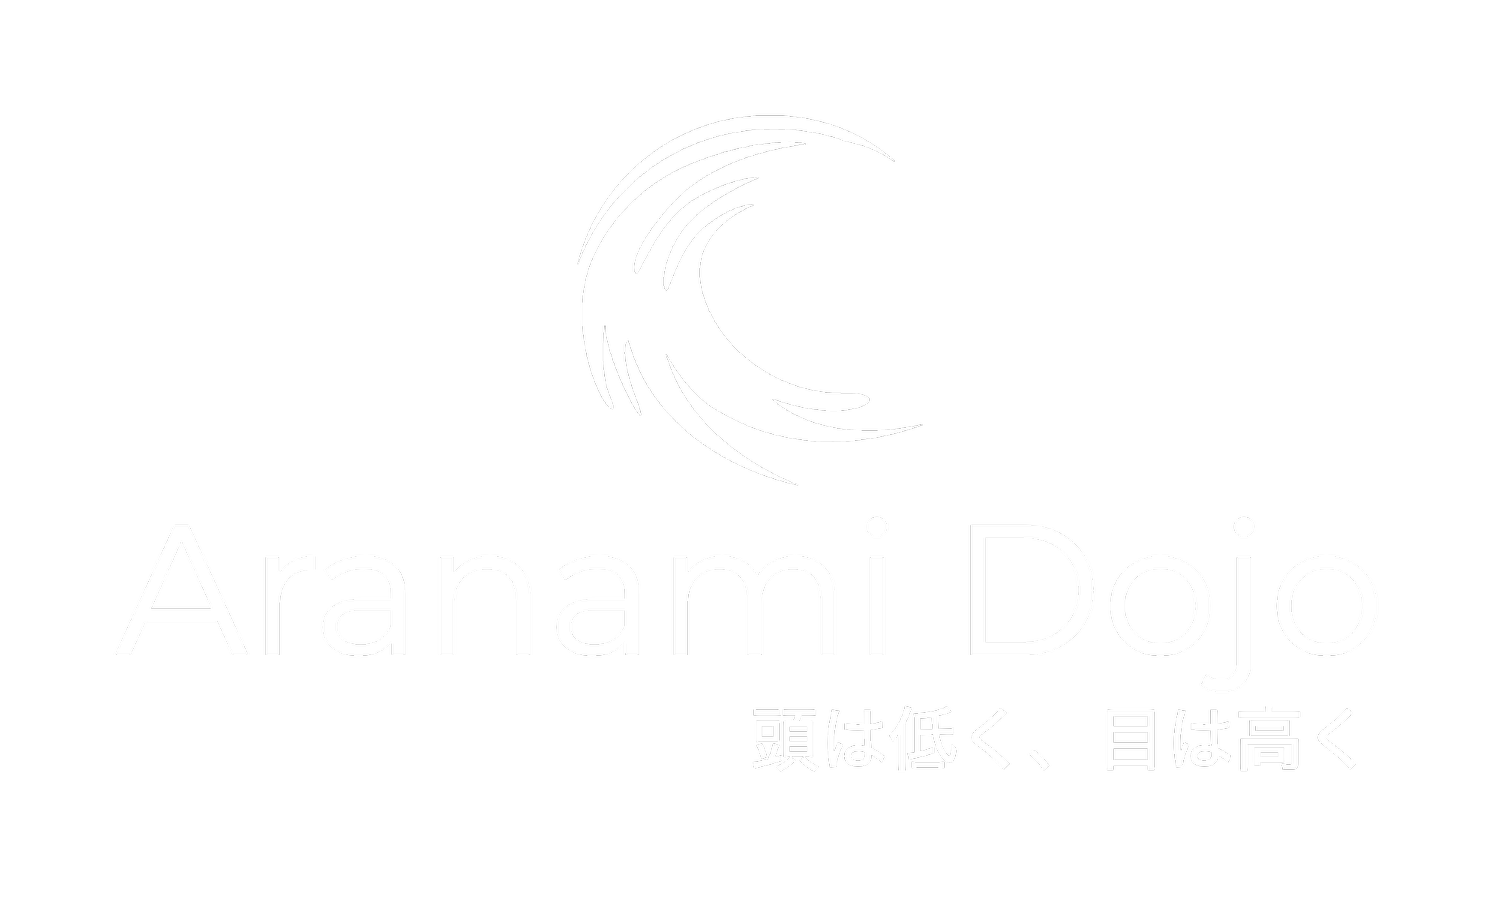 Aranami Dojo